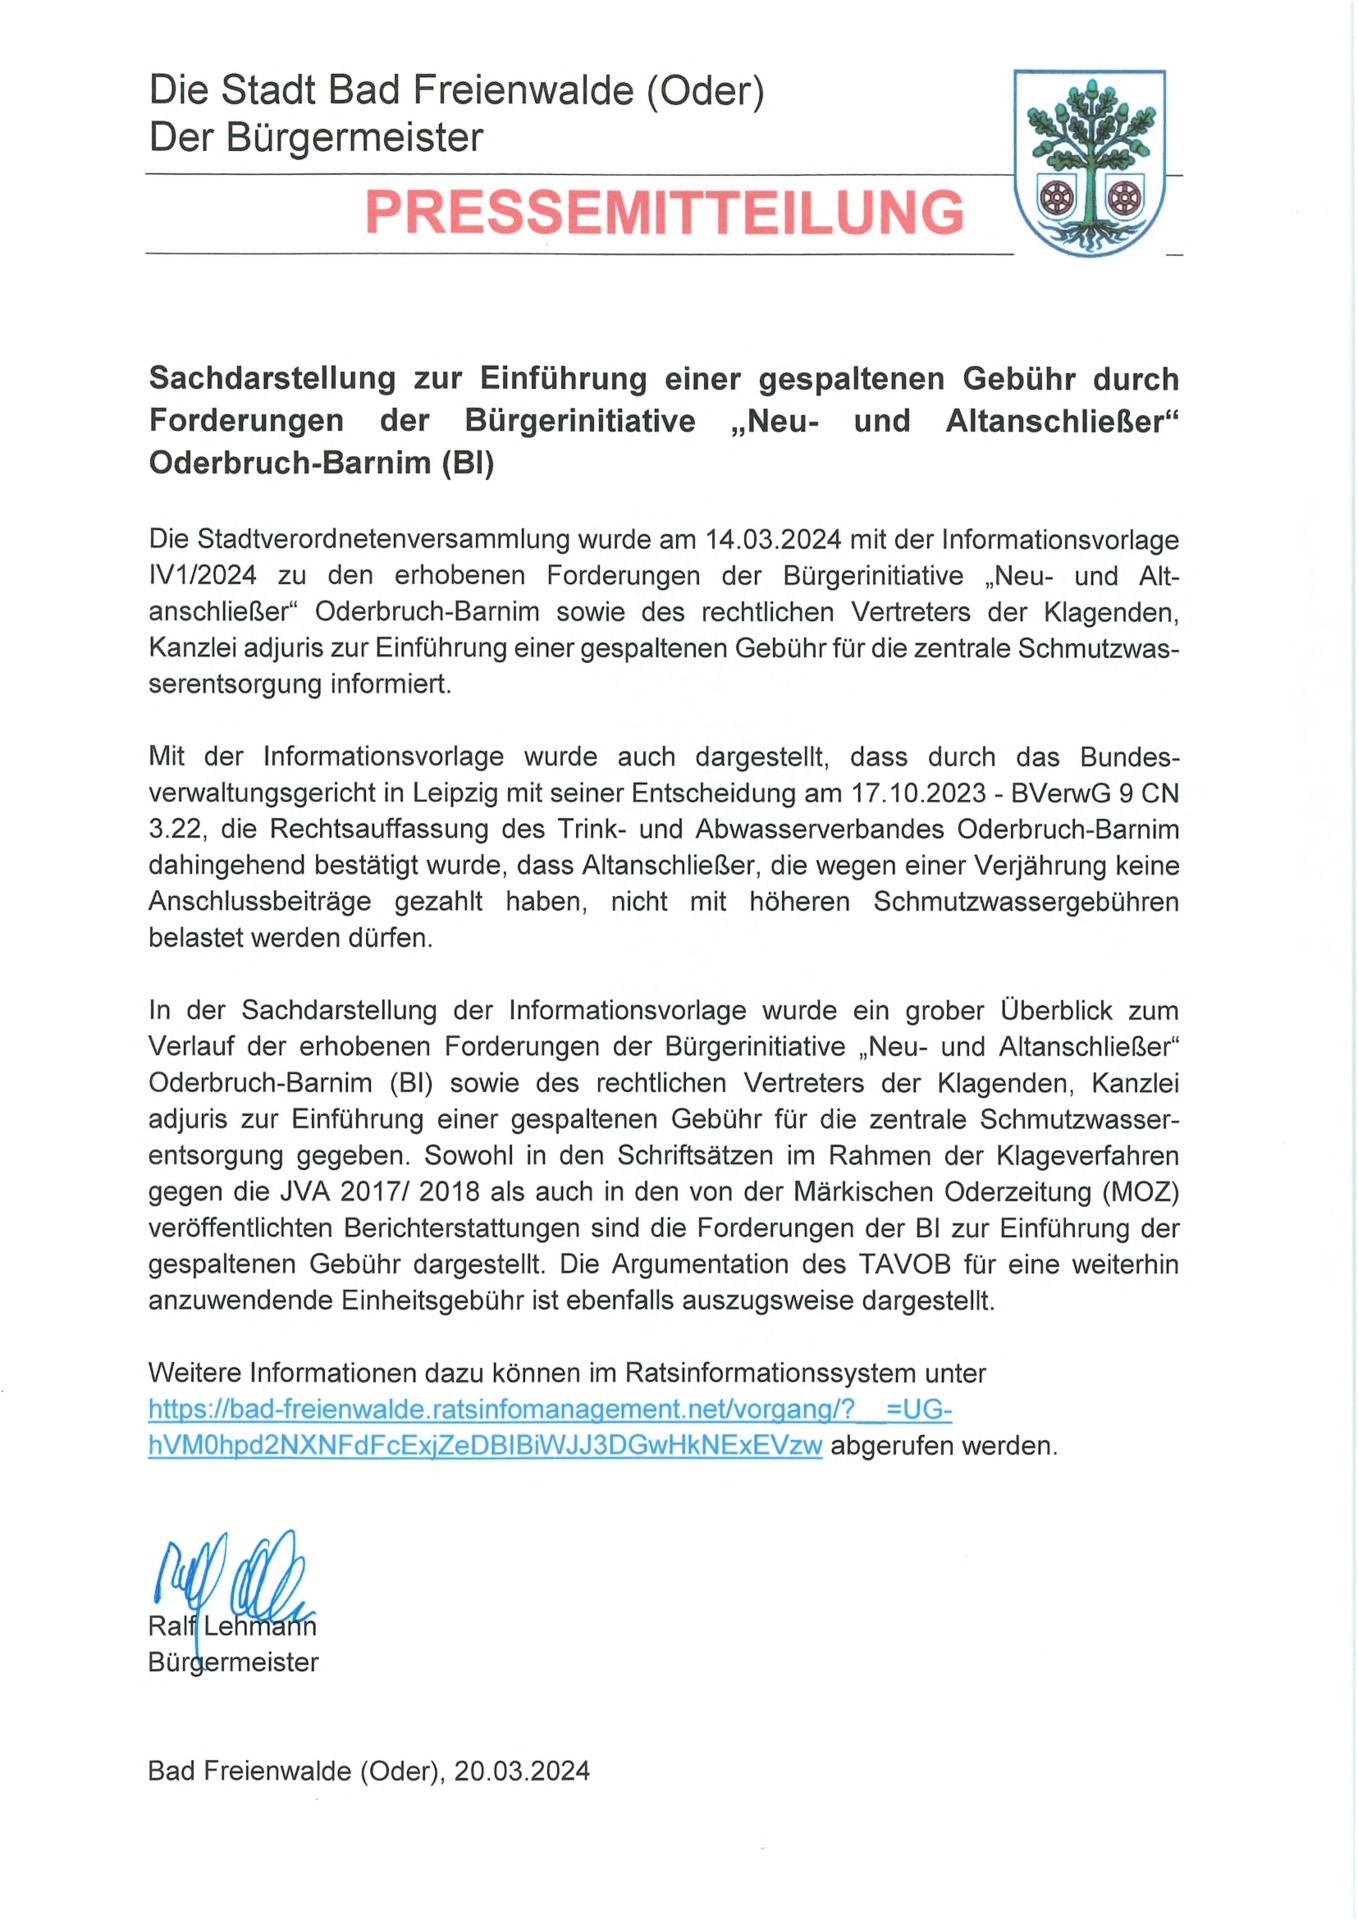 Pressemitteilung_Sachdarstellung zur Einführung einer gespaltenen Gebühr durch Forderungen der Bürgerinitiative „Neu- und Altanschließer“ Oderbruch-Barnim (BI)